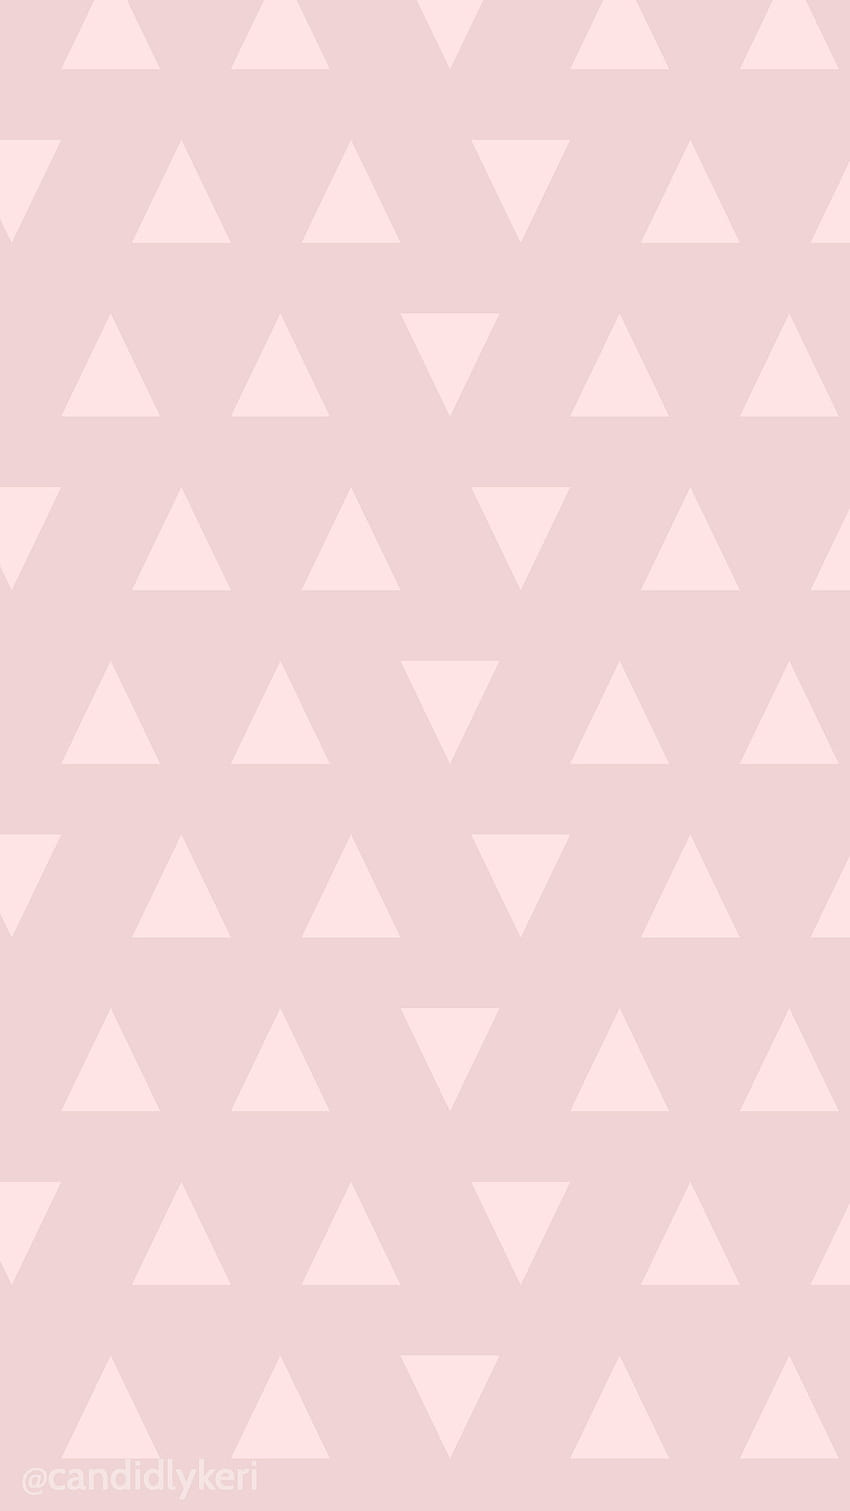 Rosa hübscher Dreieckhintergrund, den Sie auf dem Blog finden können! Für alle HD-Handy-Hintergrundbild